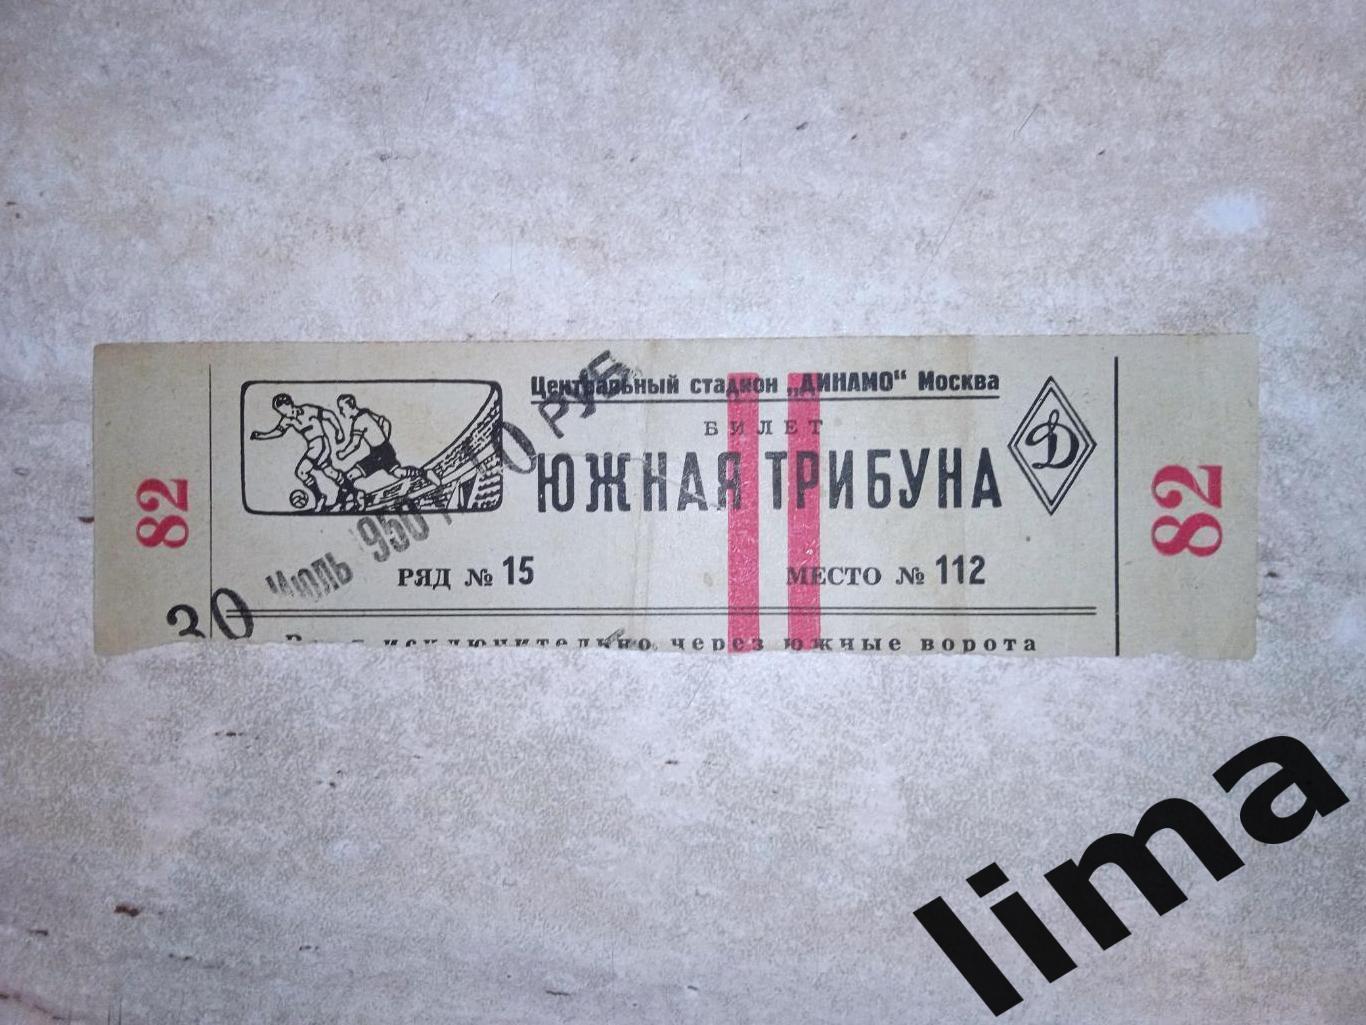 Билет футбол ЦСКА ЦДКА Москва-: Локомотив Москва 30.07.1950